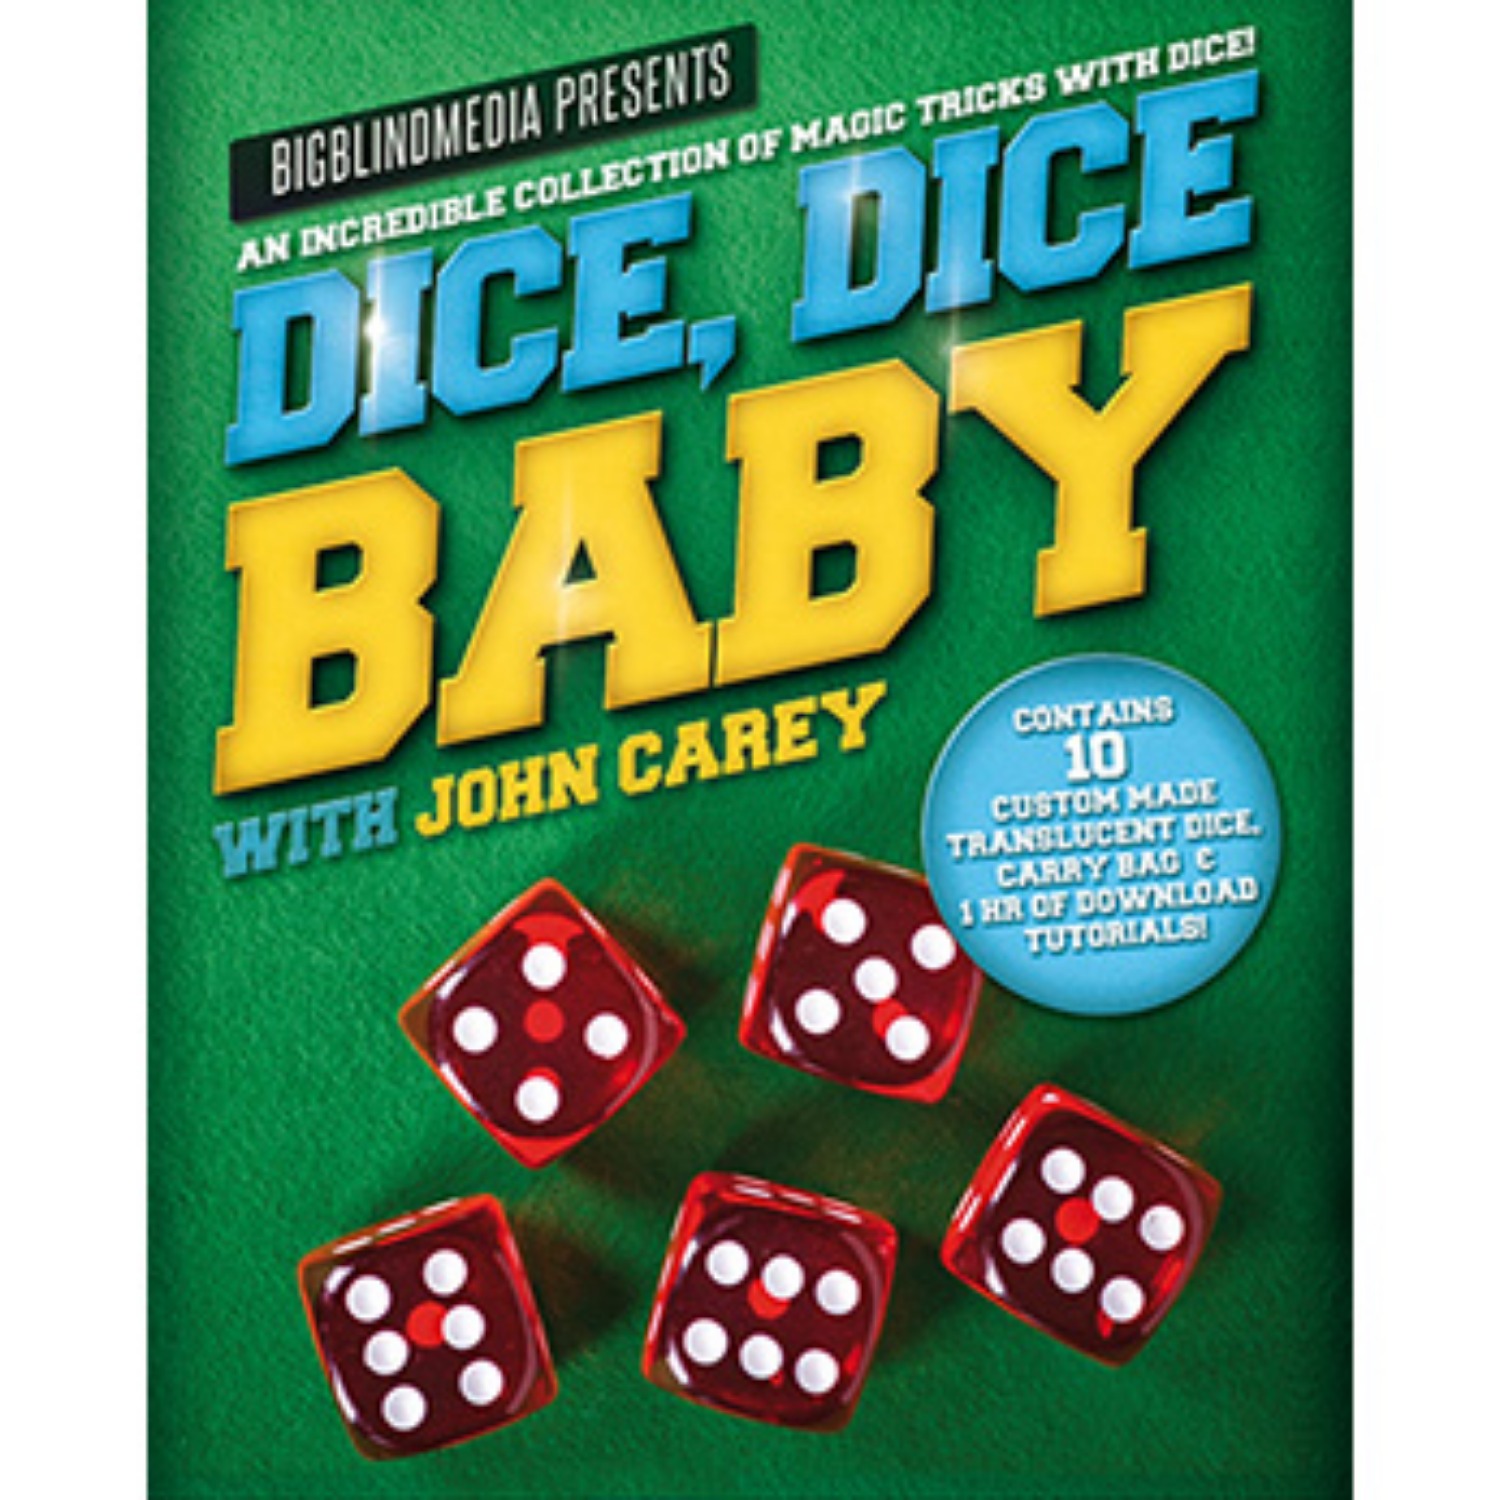 [다이스,다이스베이비] Dice, Dice Baby with John Carey (Props and Online Instructions) 검정주머니 속의 주사위 색상을 관객이 정확하게 맞출수 있습니다.